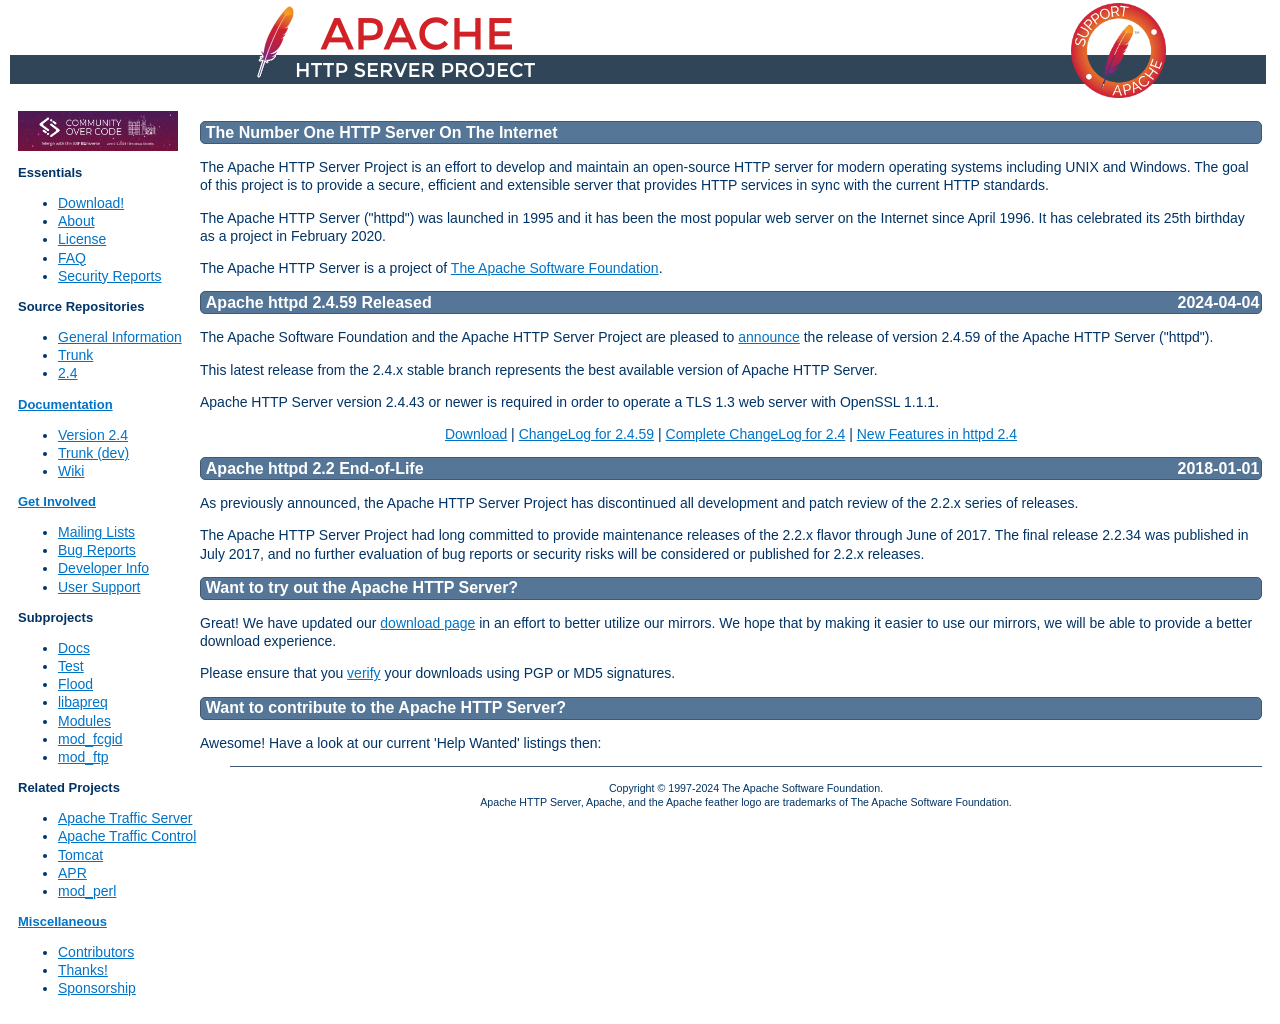 httpd.apache.org